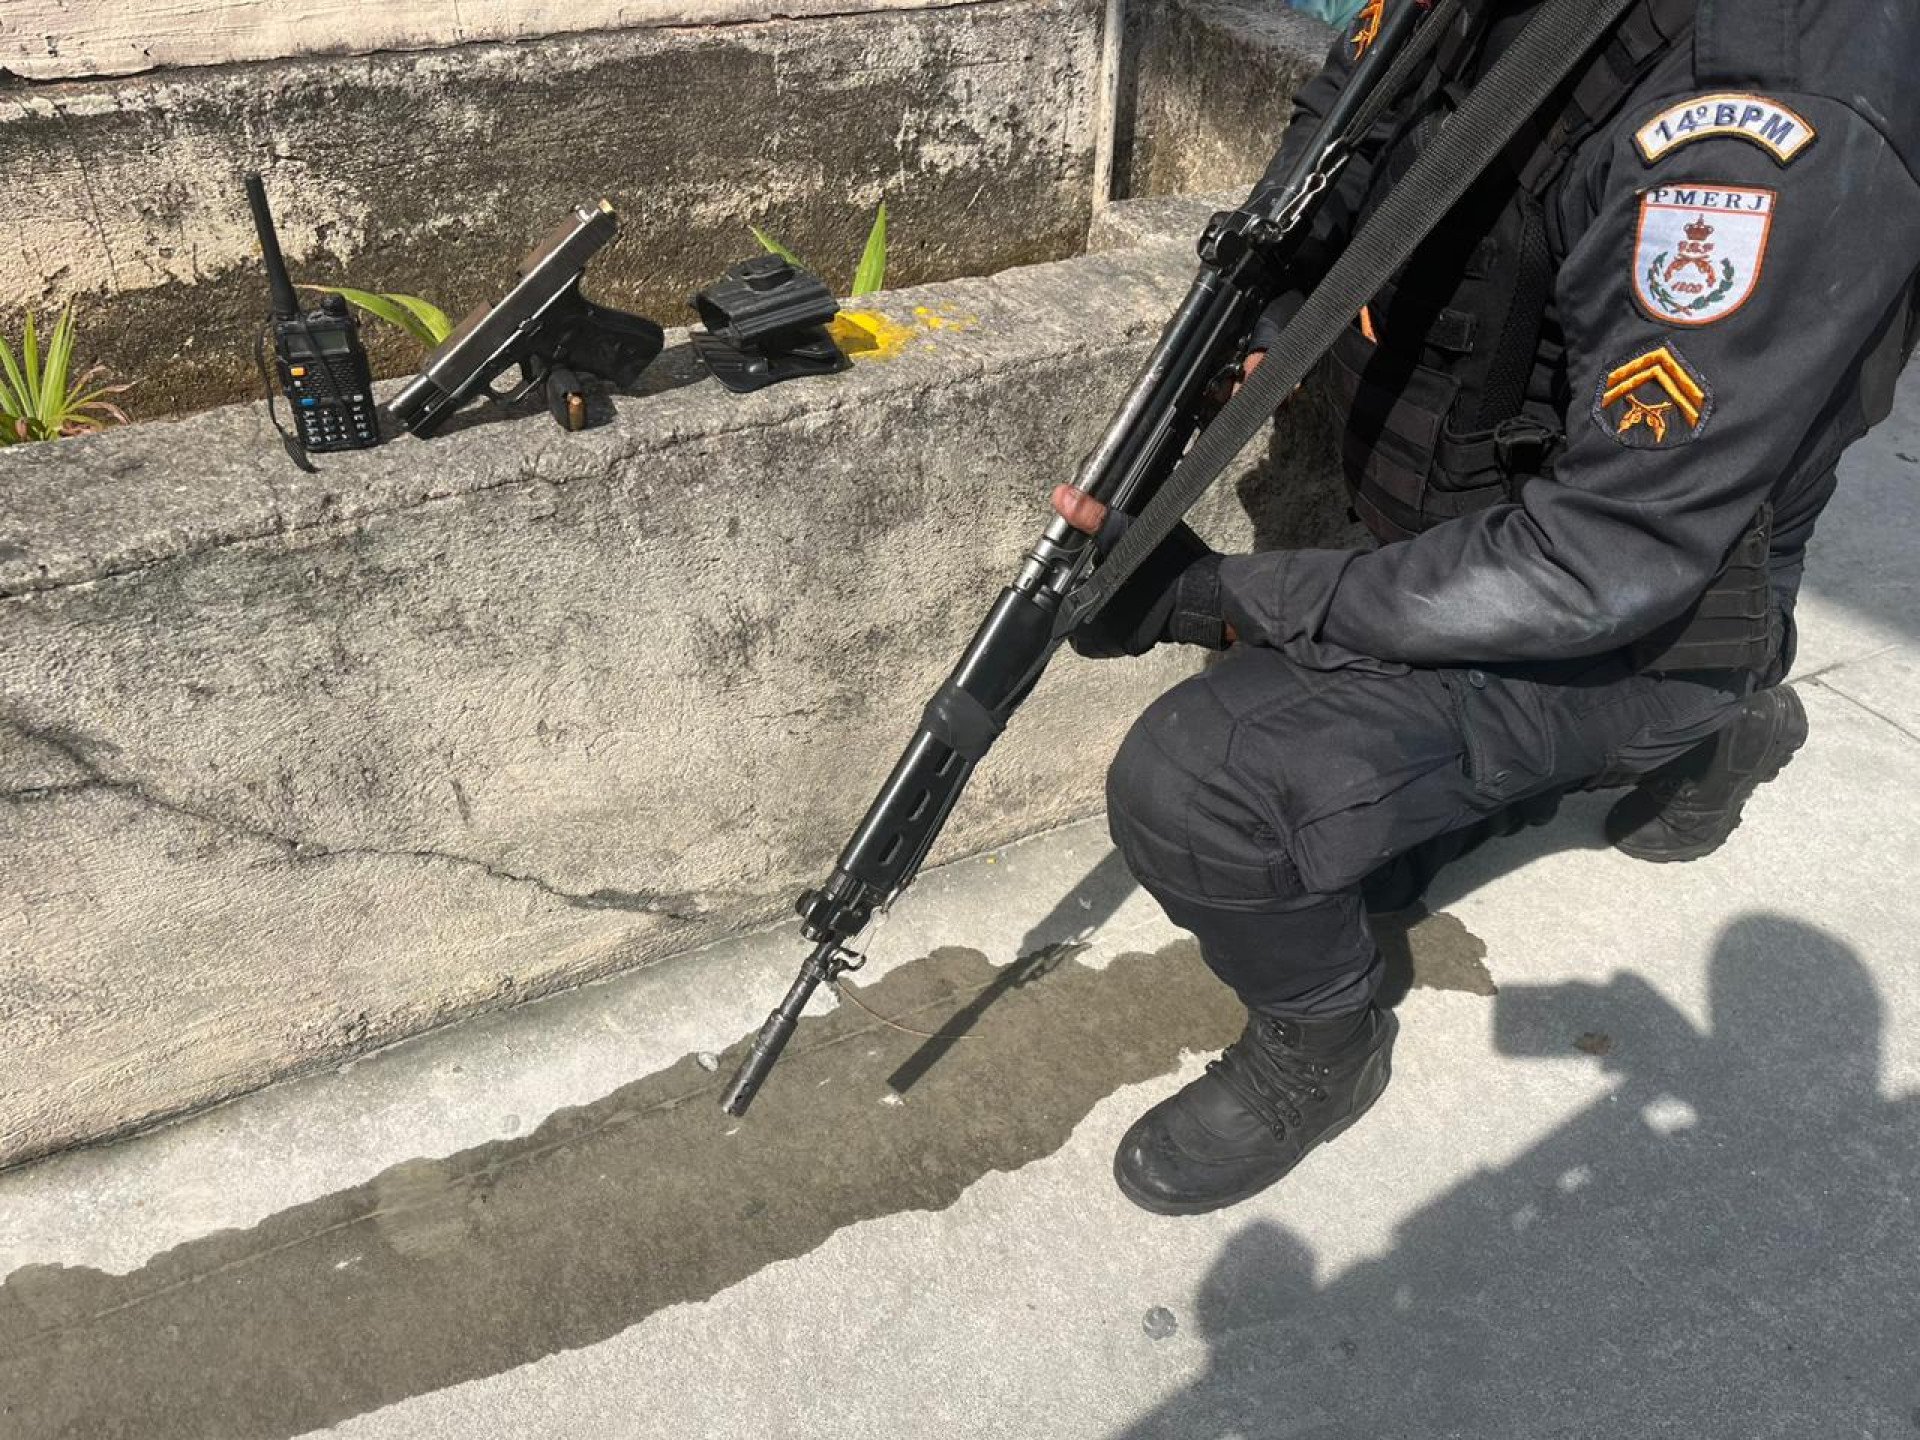 Pistola calibre 9mm e rádio comunicador apreendidos com suspeito - Divulgação / Polícia Militar